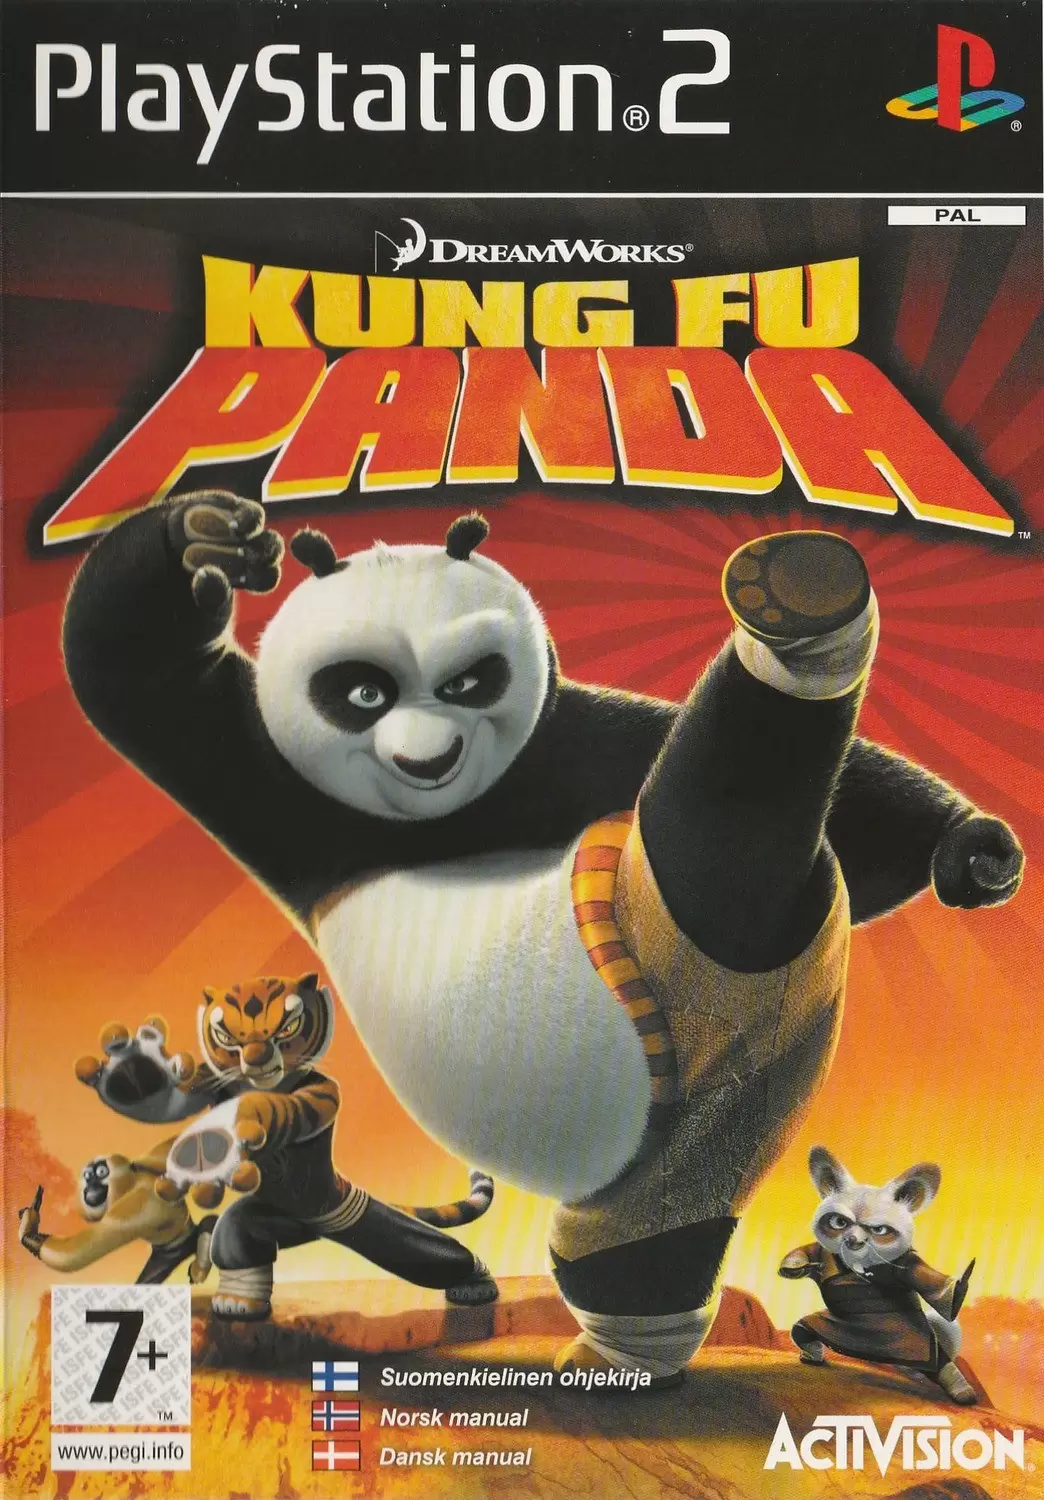 PS2 Games - Kung Fu Panda